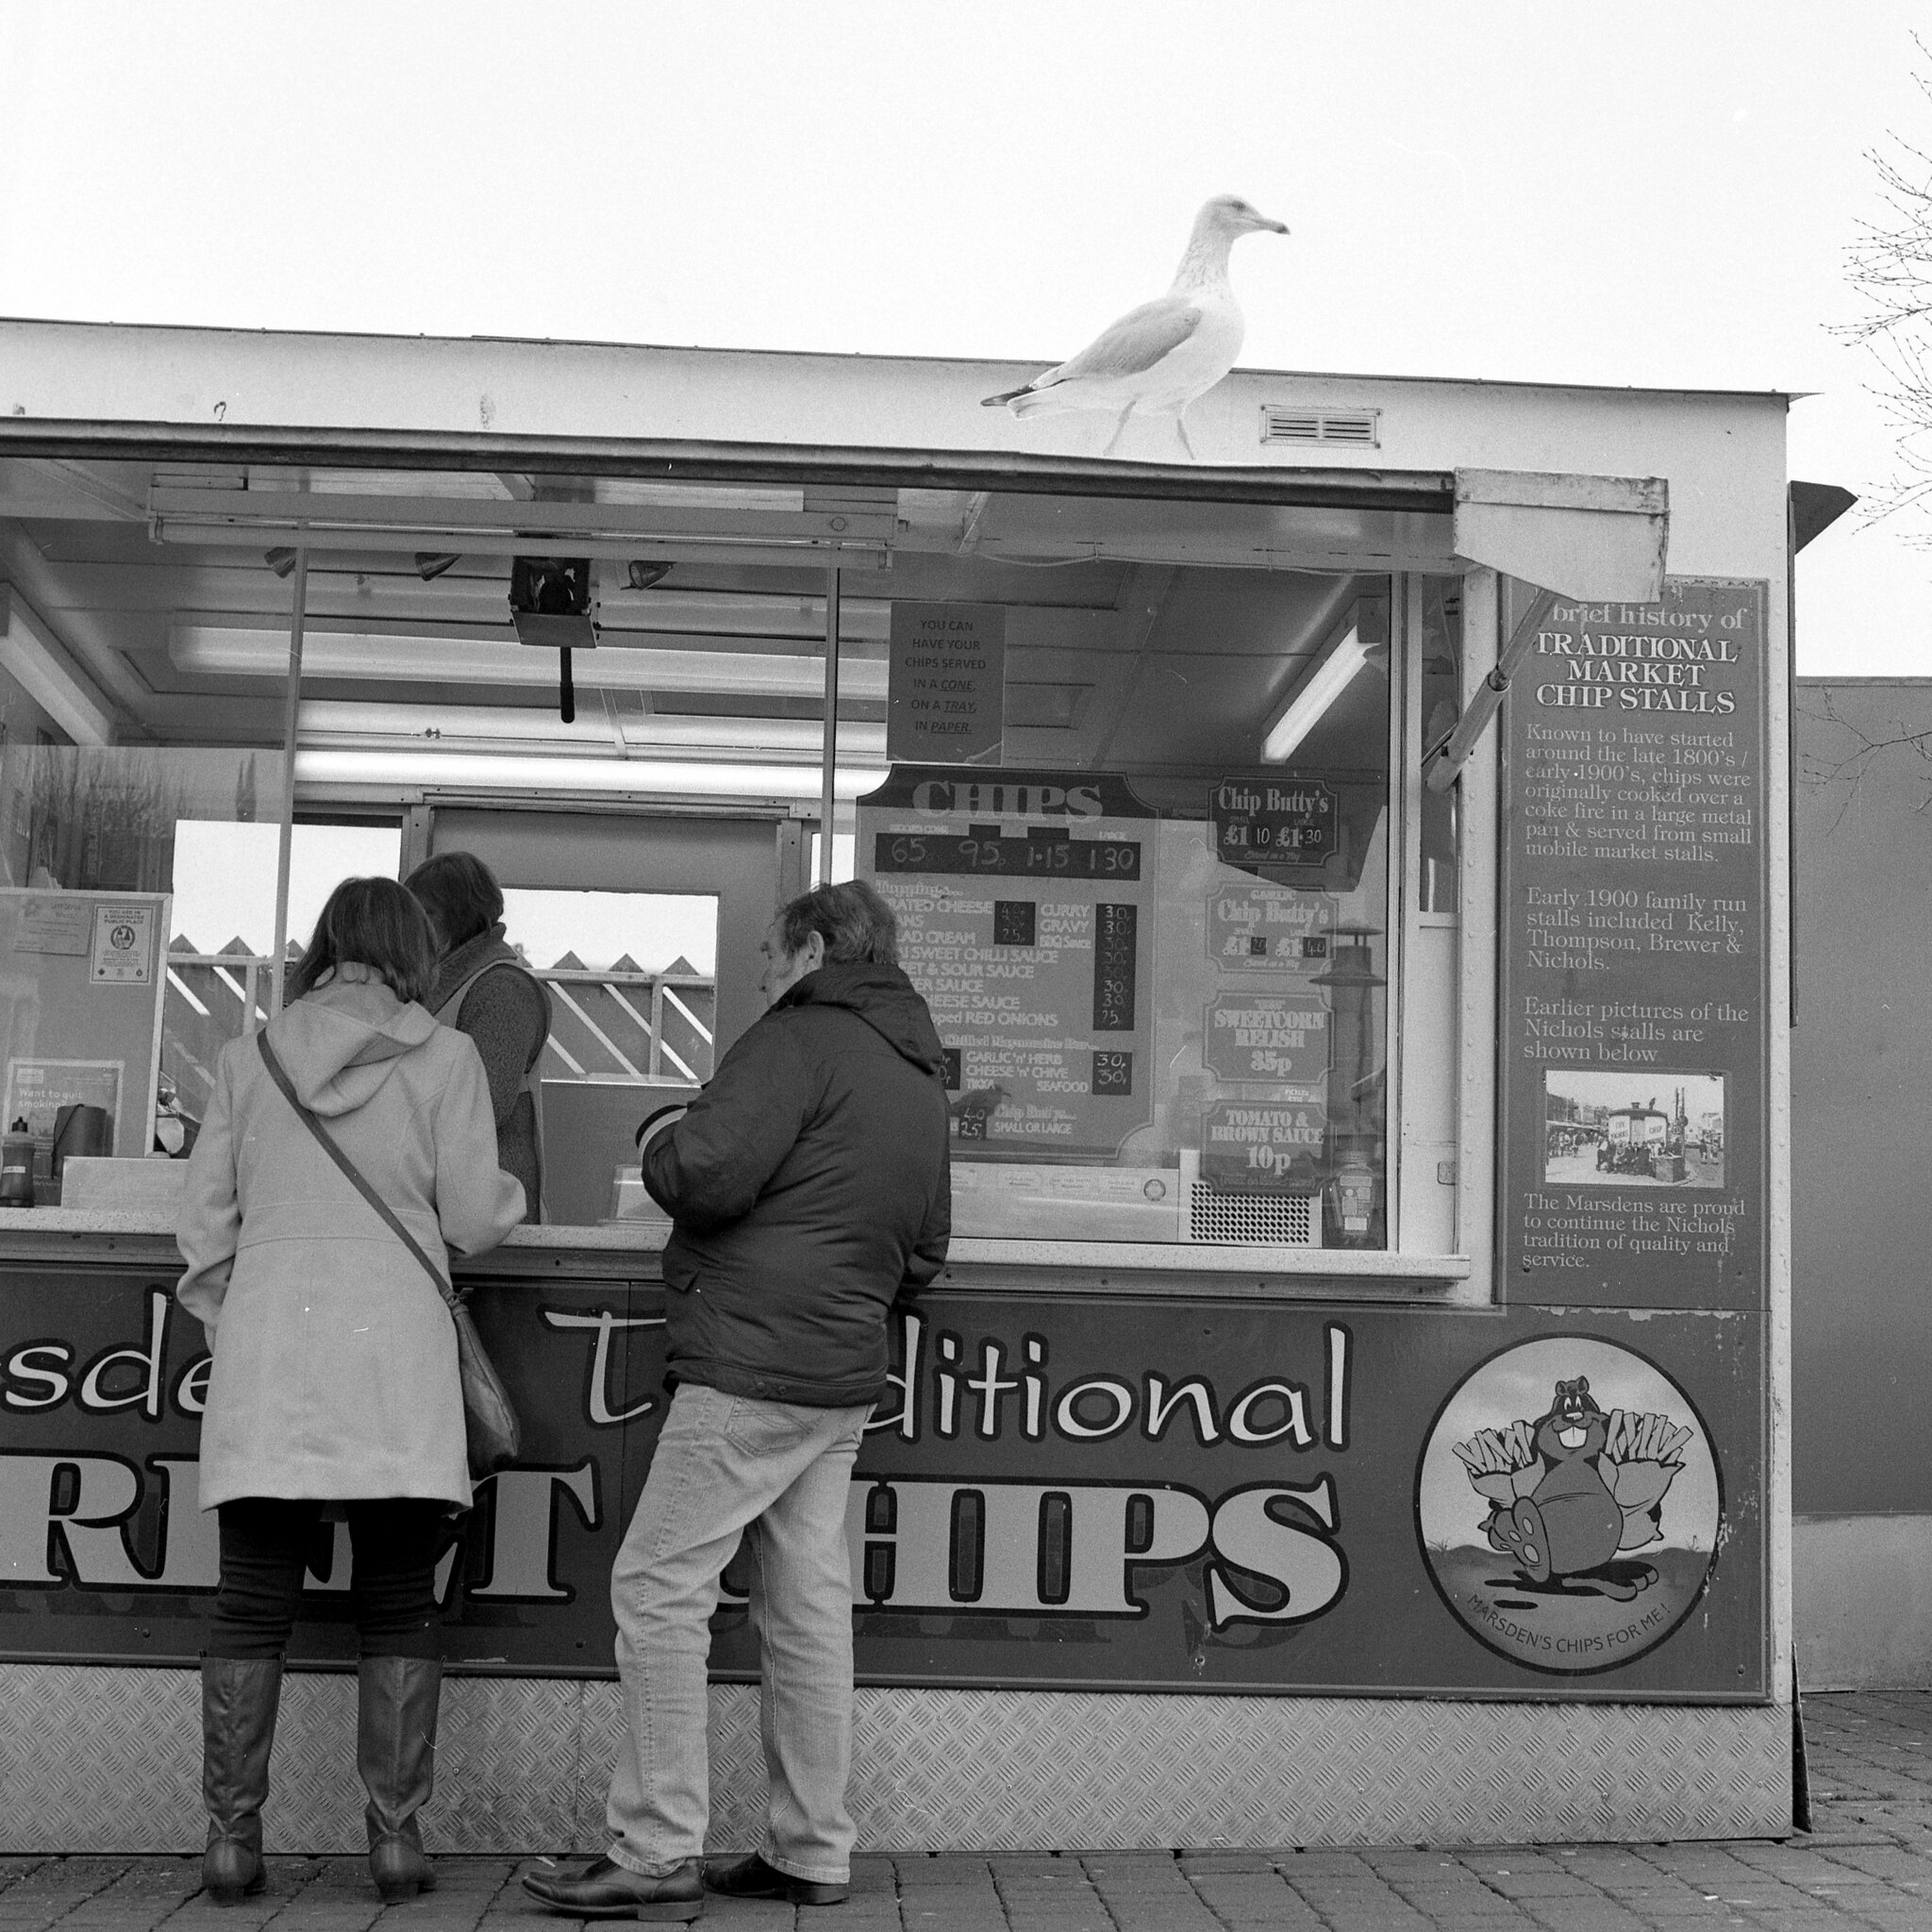 Seagull n' chips at Great Yarmouth by Trojan Llama 